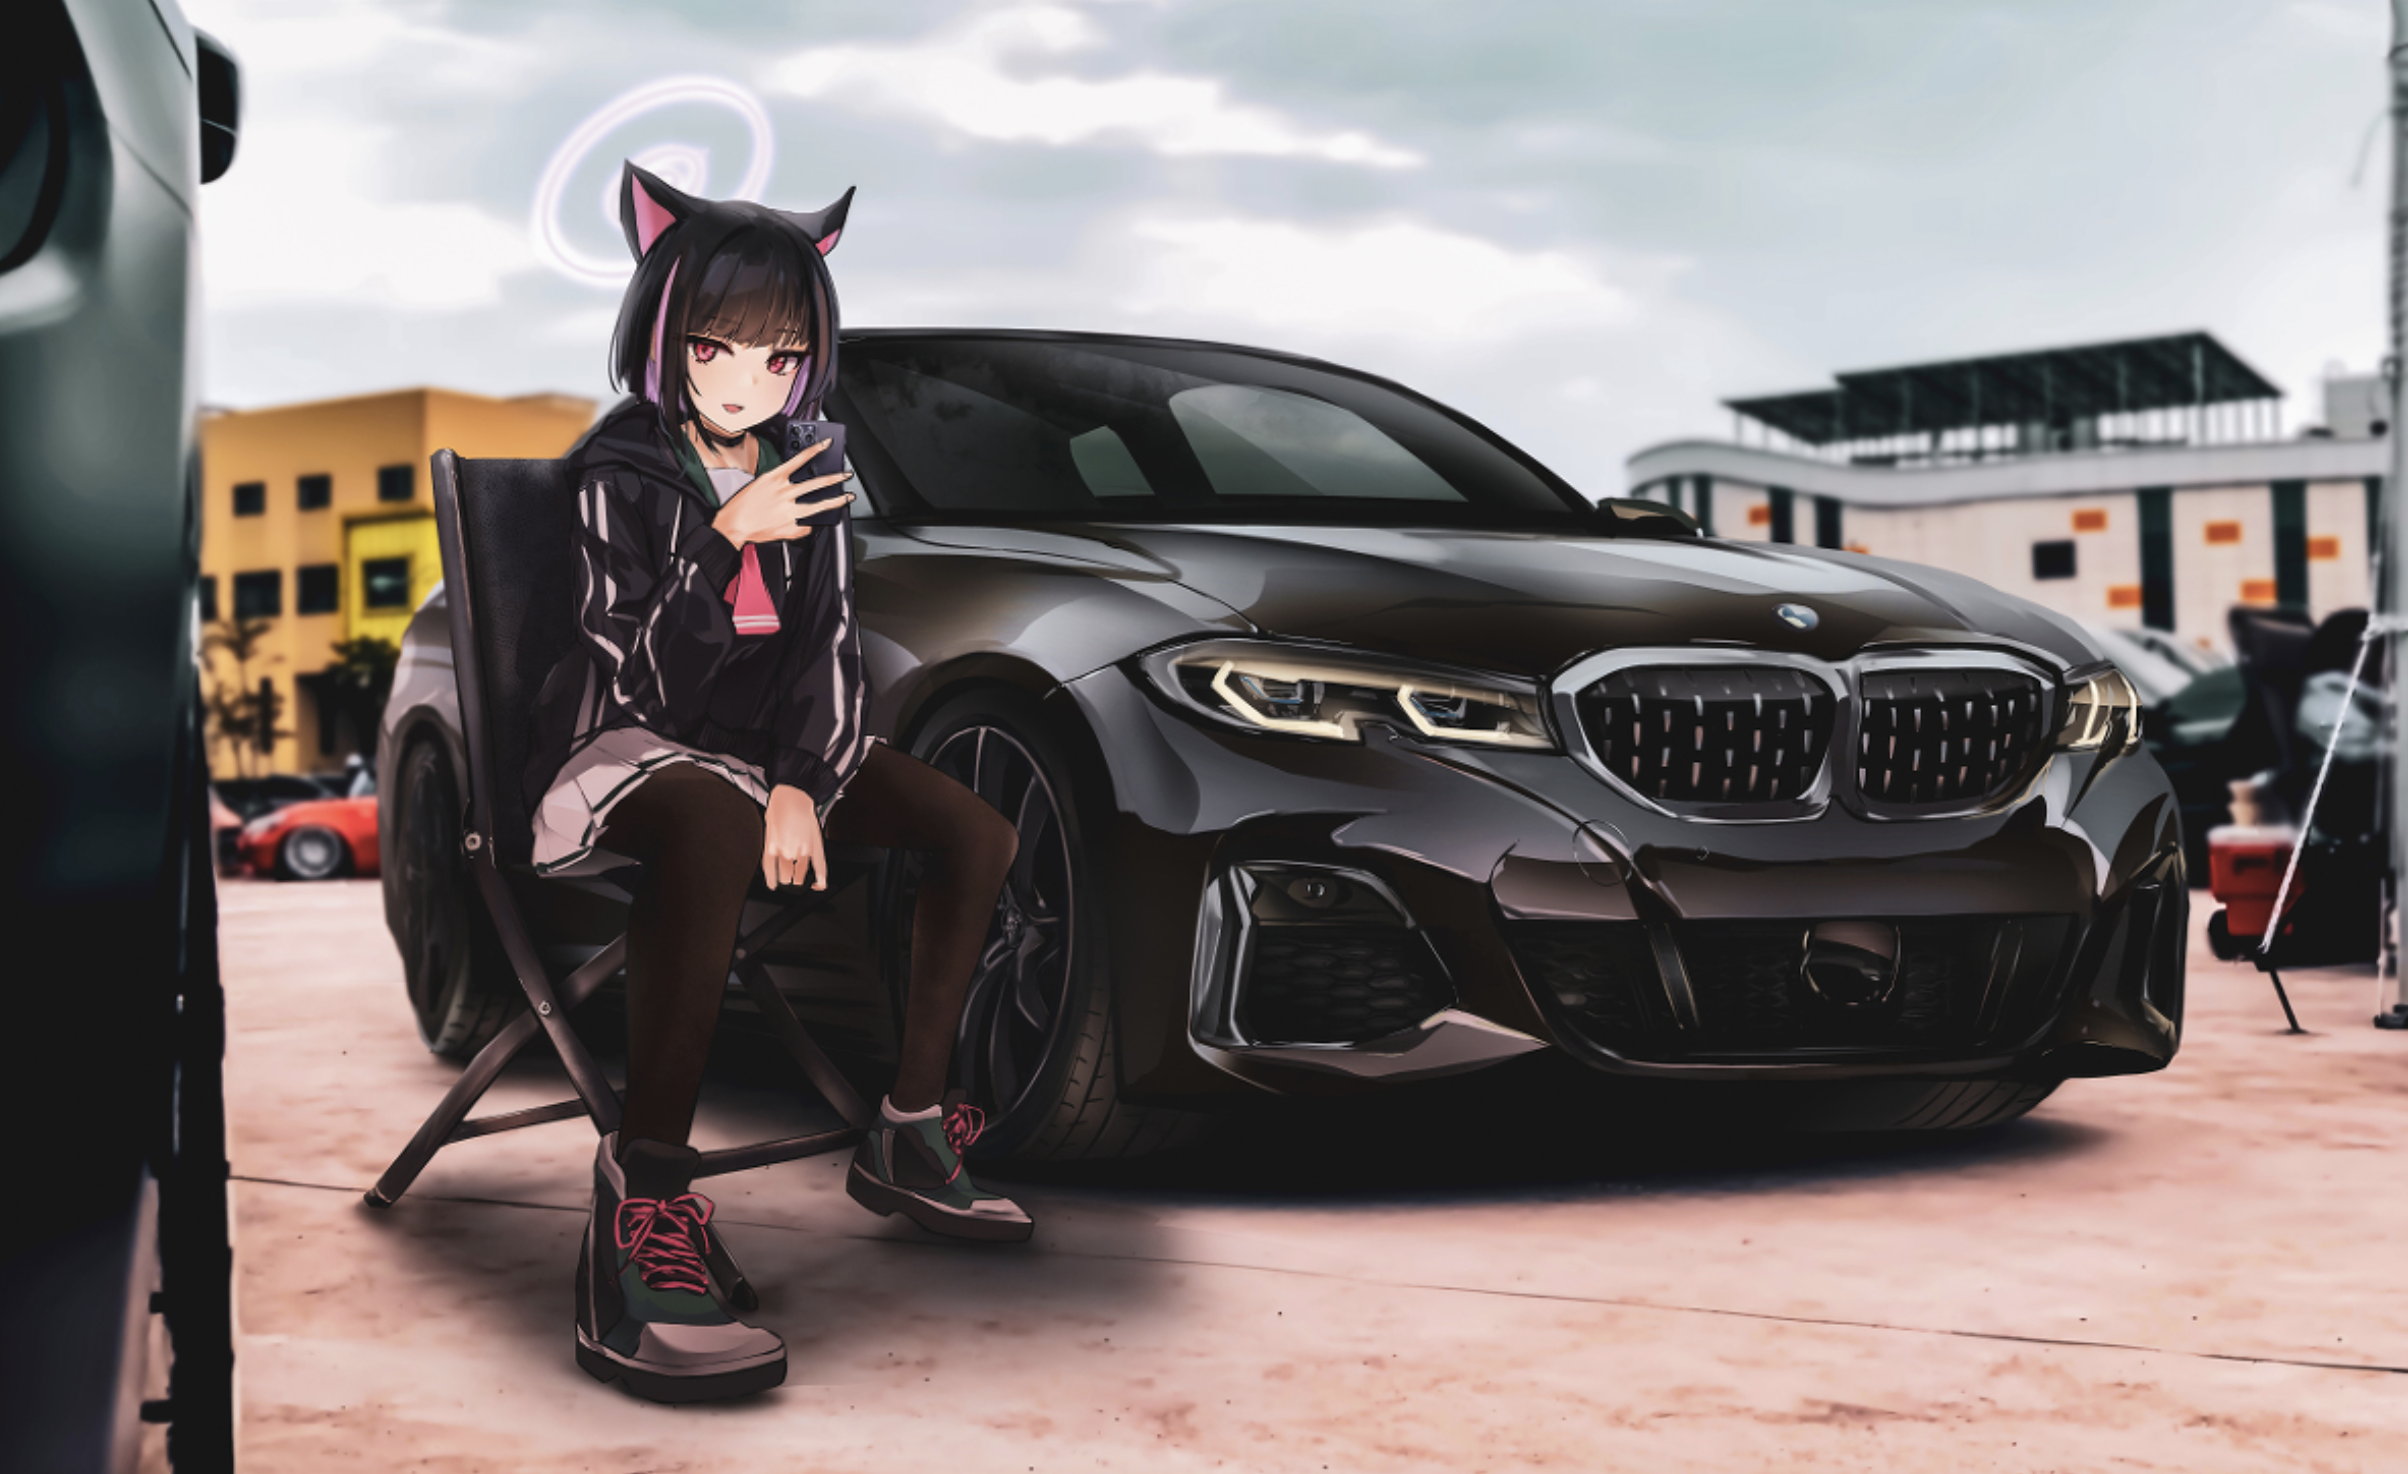 Illustration Artwork Blue Archive Kyouyama Kazusa Vehicle BMW BMW M340i Anime Girls Halo 2408x1474